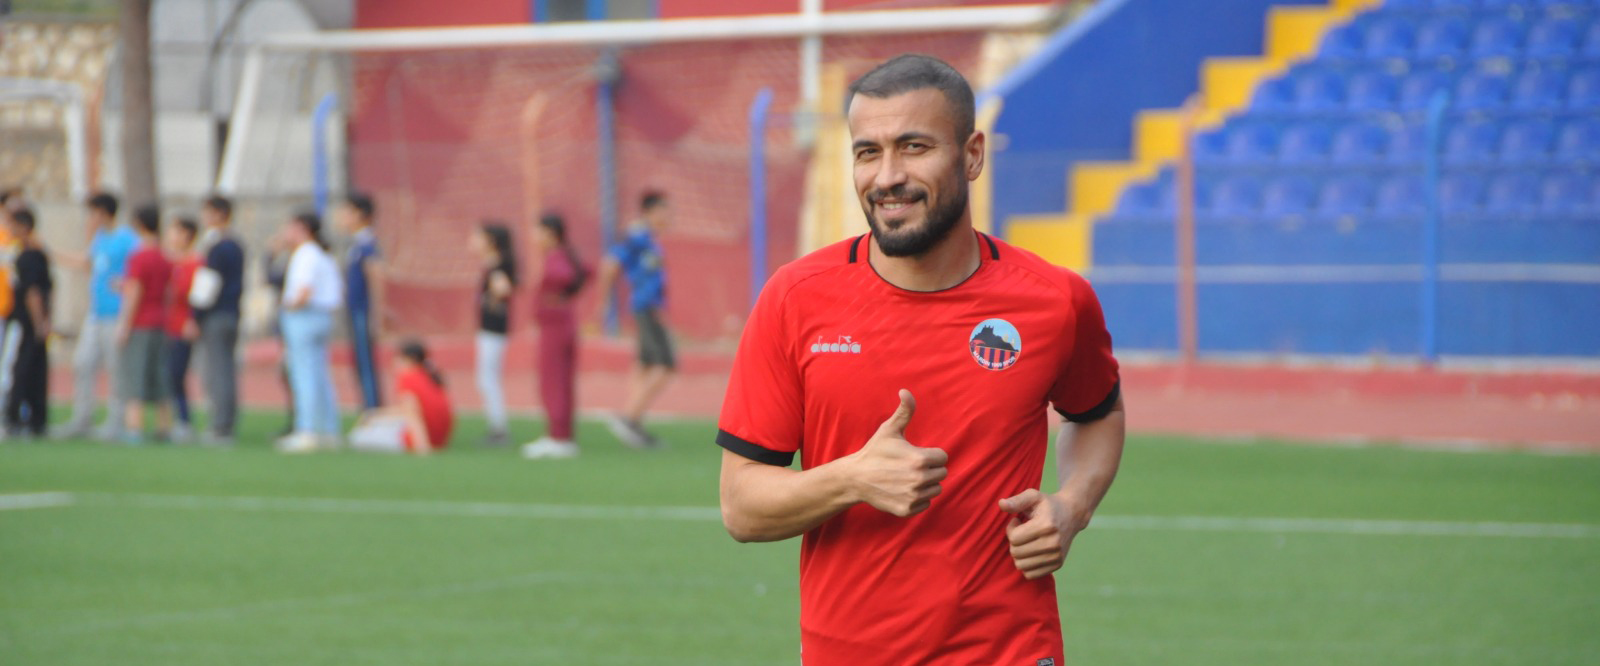 Mardin Spor’da Çınar maçı hazırlıkları başladı